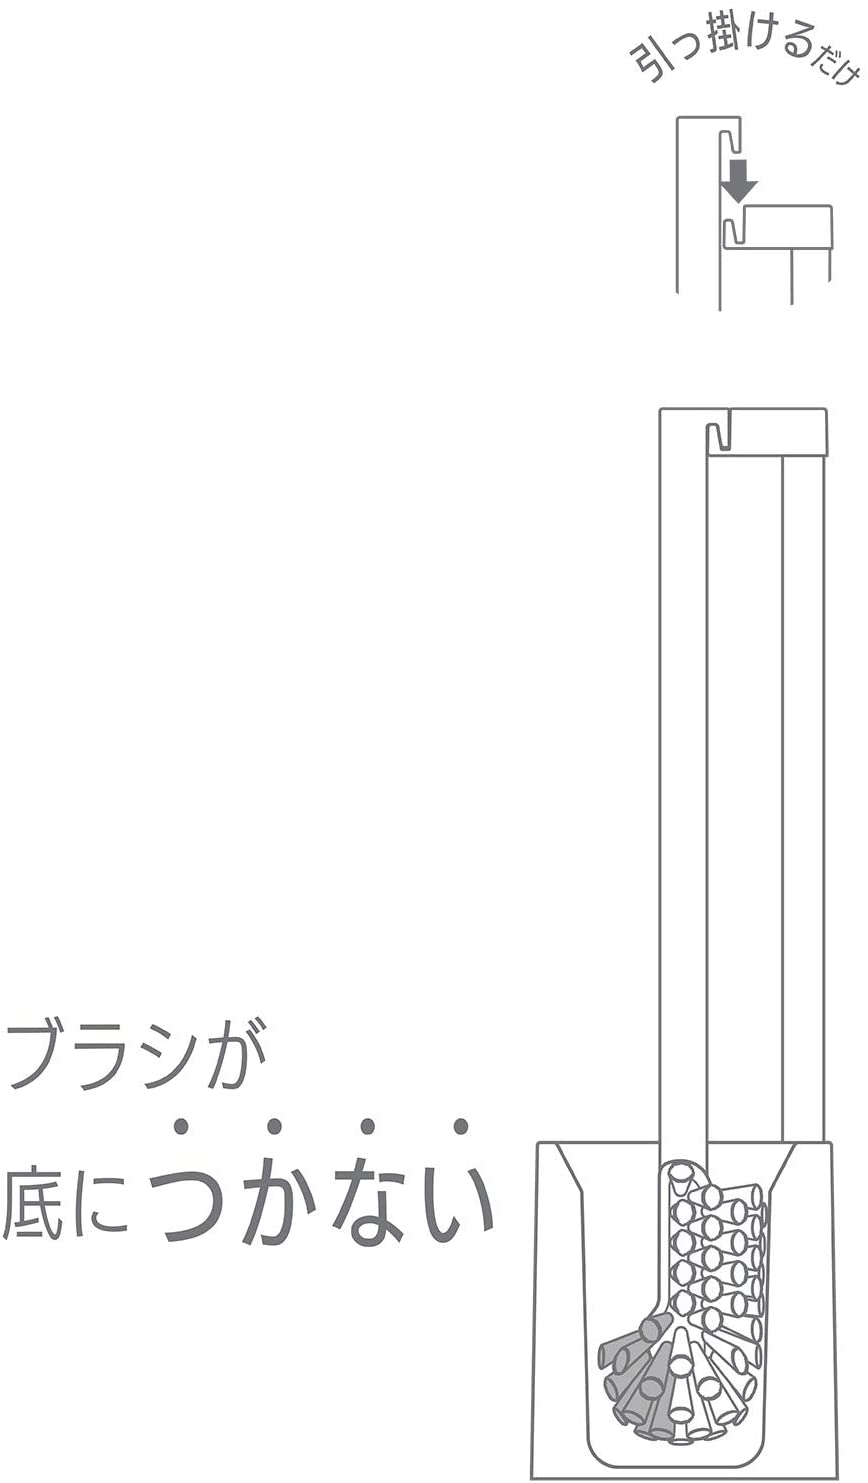 LEC(レック) KAKU トイレブラシ ケース付きの商品画像サムネ4 